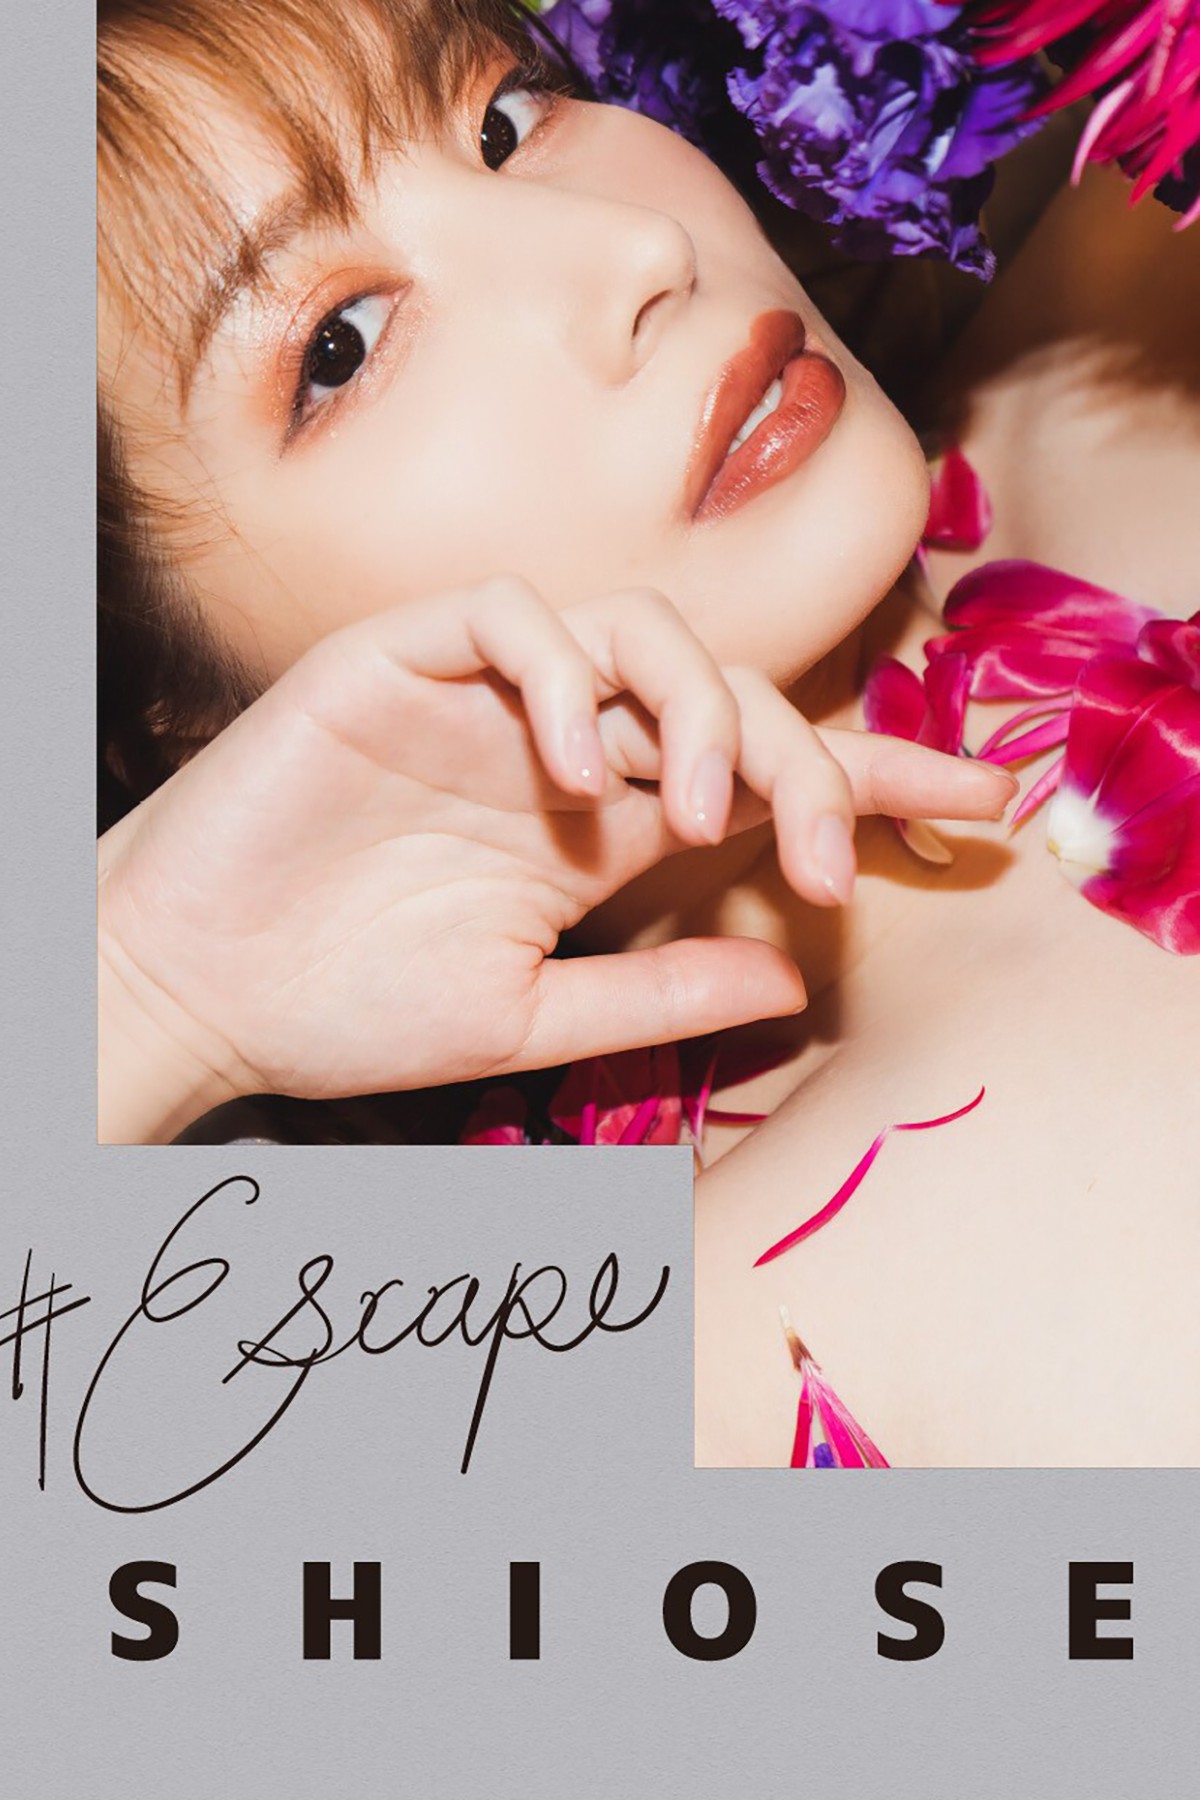 Photobook Shiose 汐世 – Escape